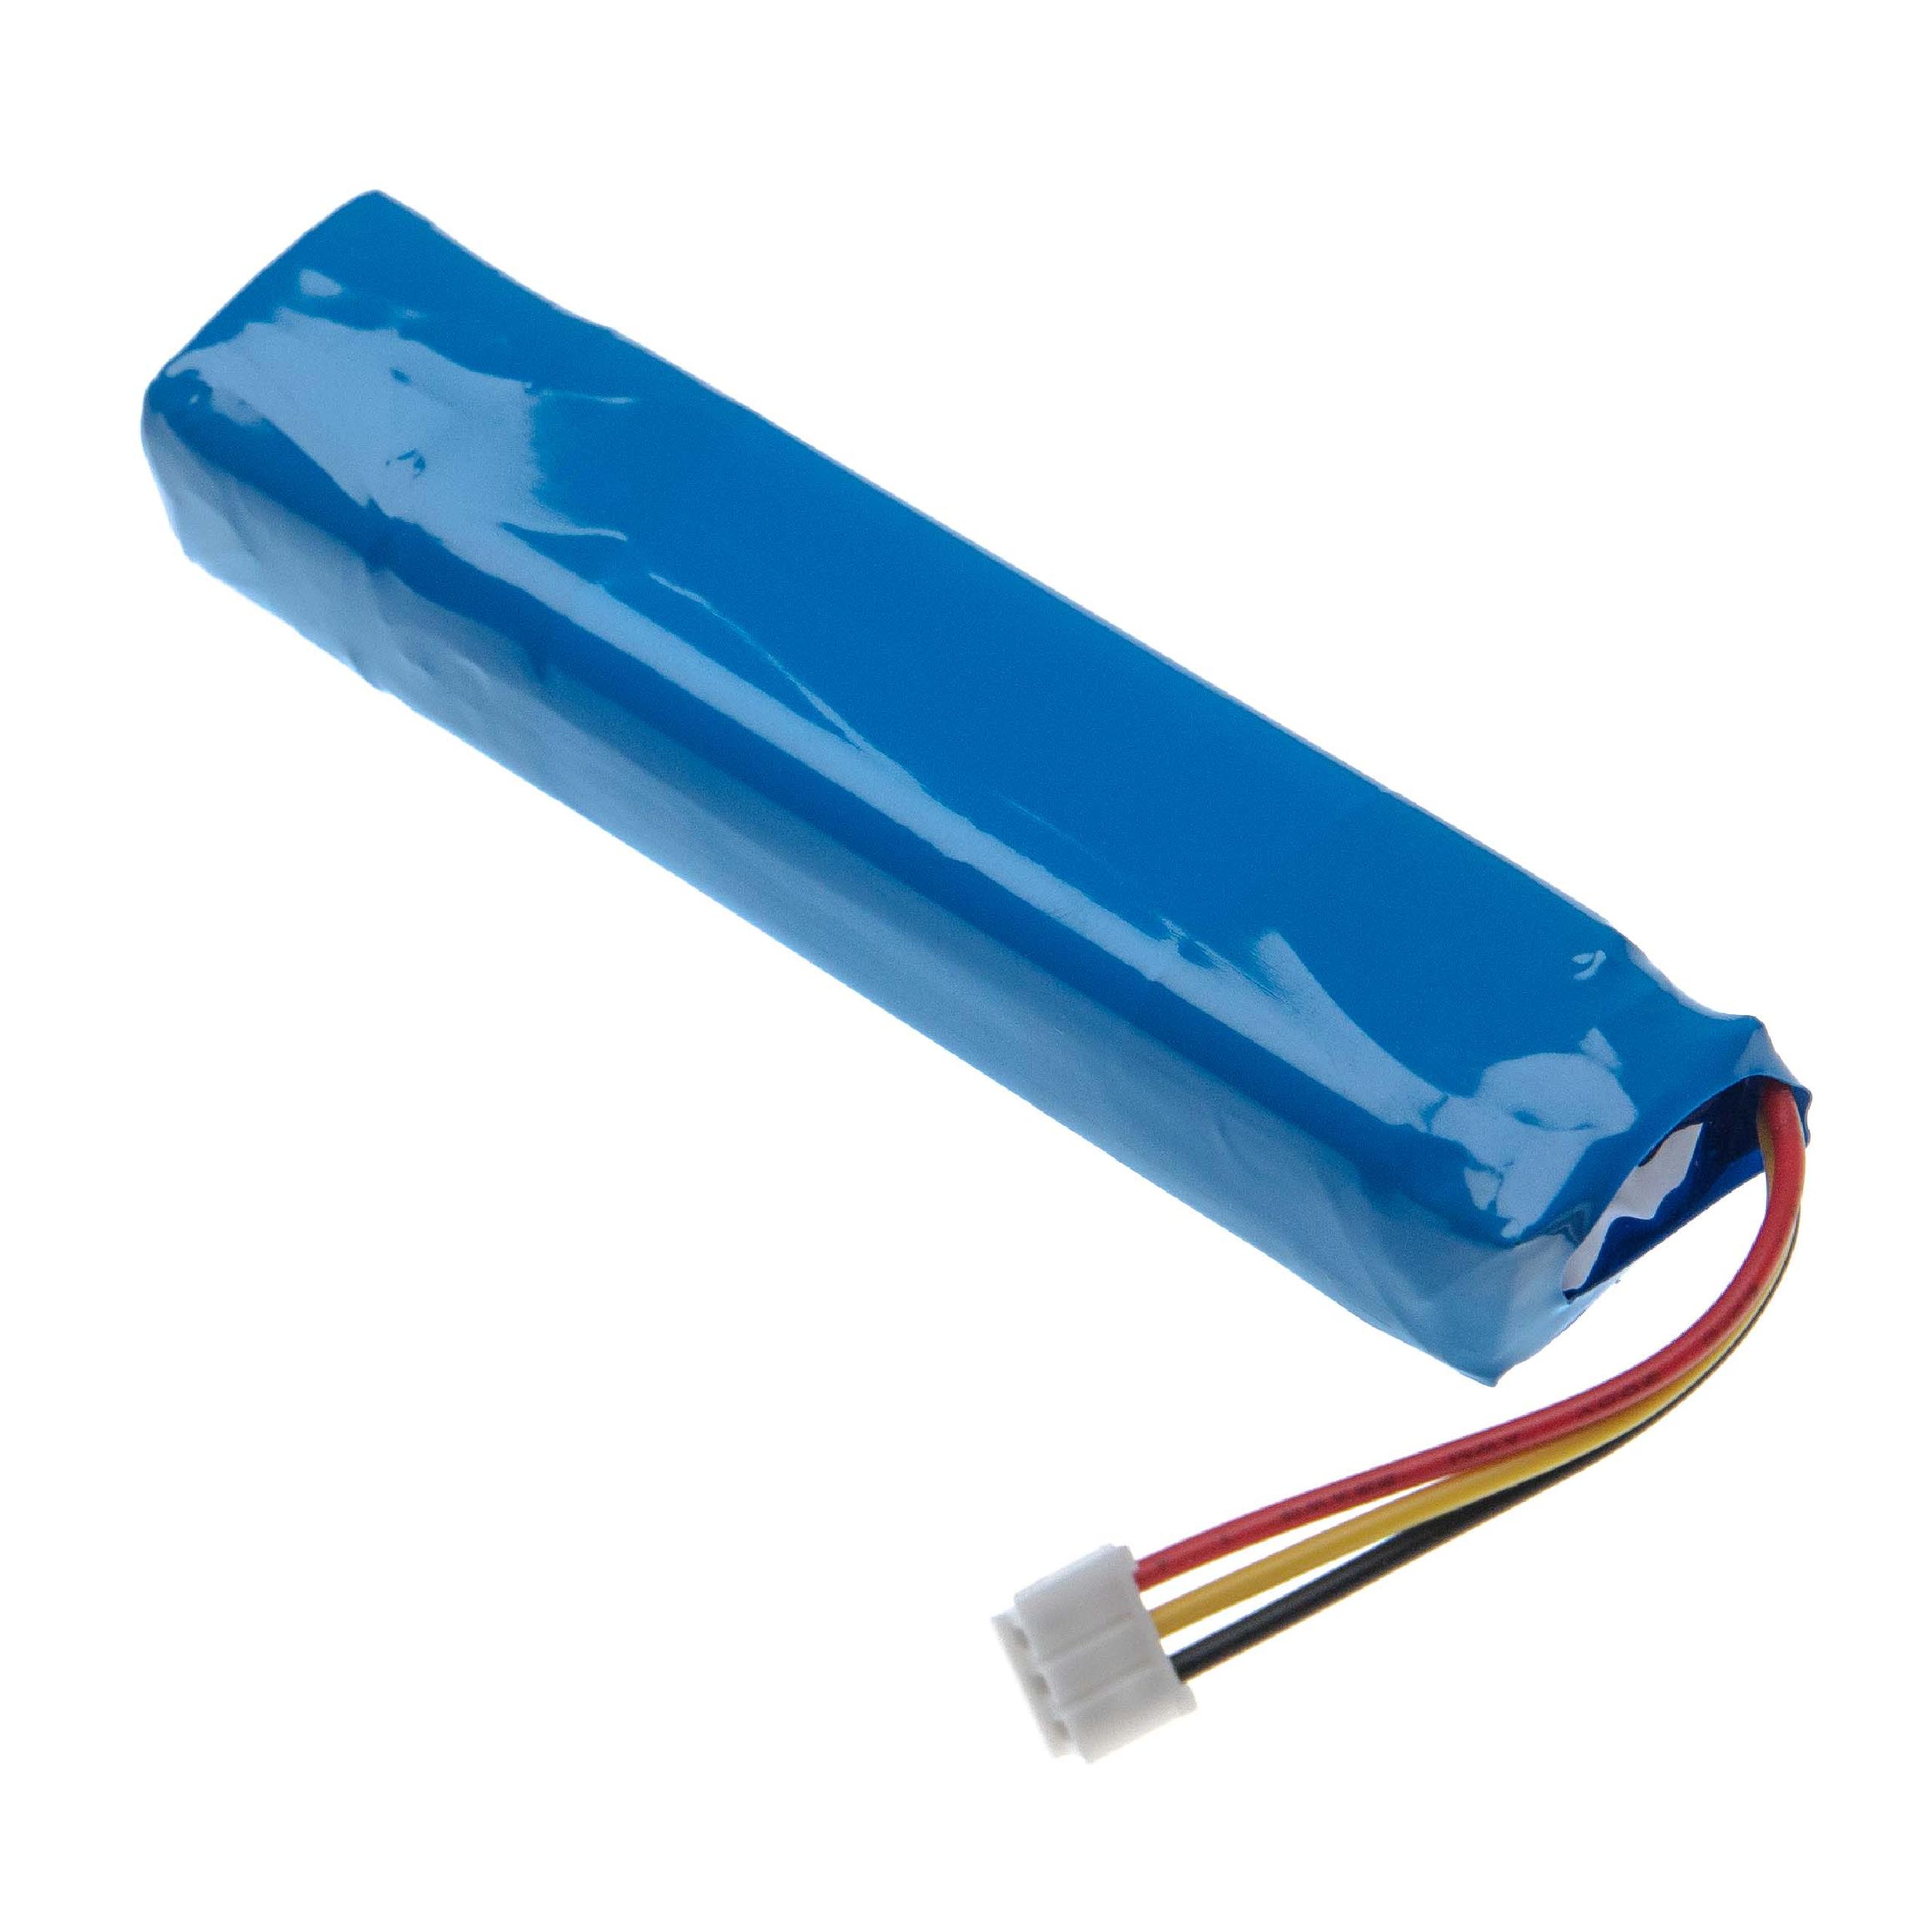 Batterie remplace JBL MLP822199-2P, DS144112056 pour enceinte JBL - 3000mAh 3,7V Li-polymère